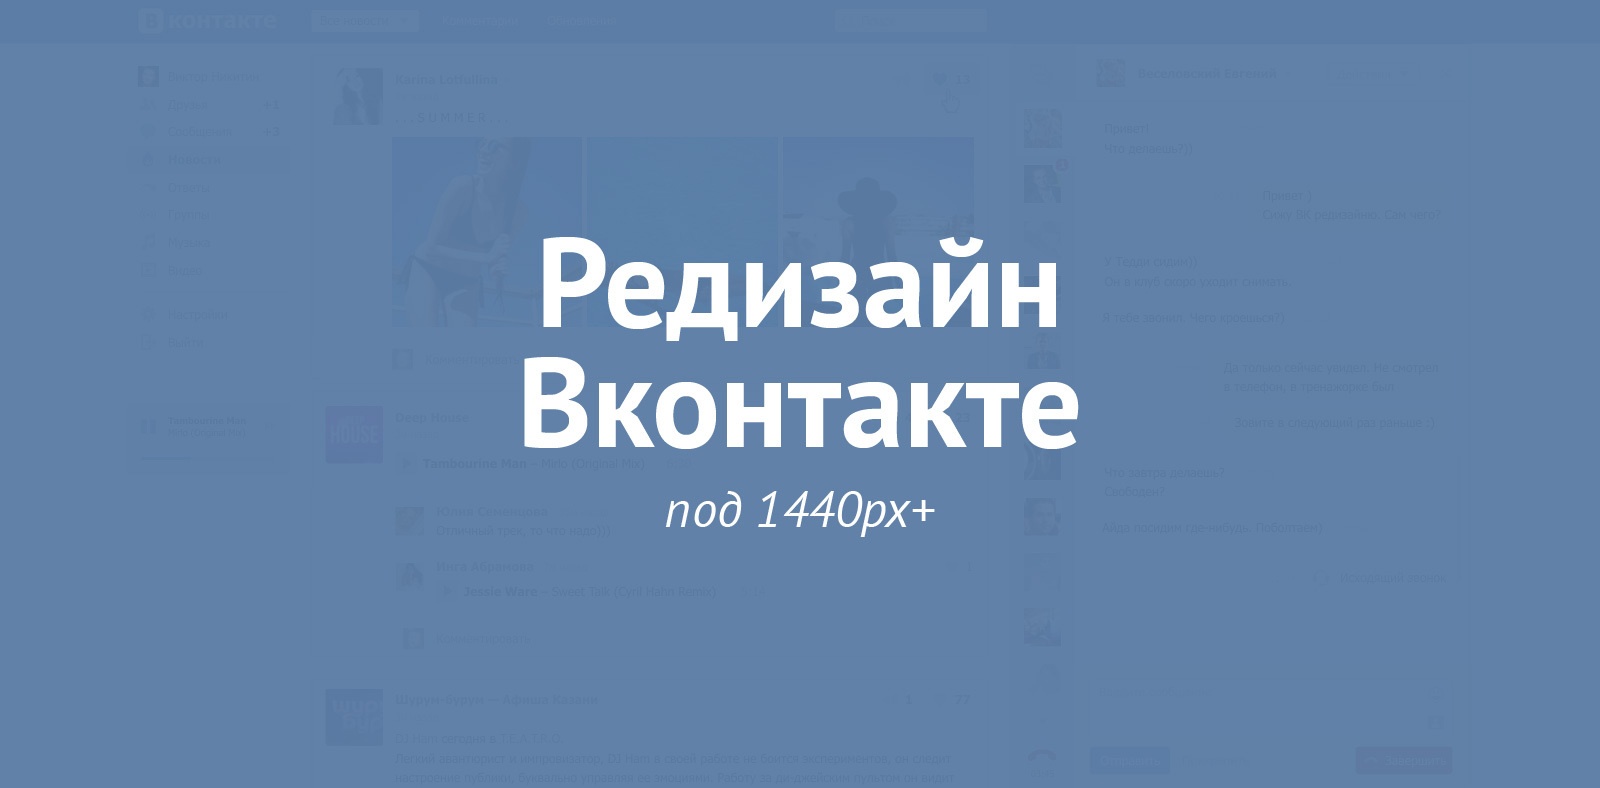 Редизайн Вконтакте под 1440пк+ - 1